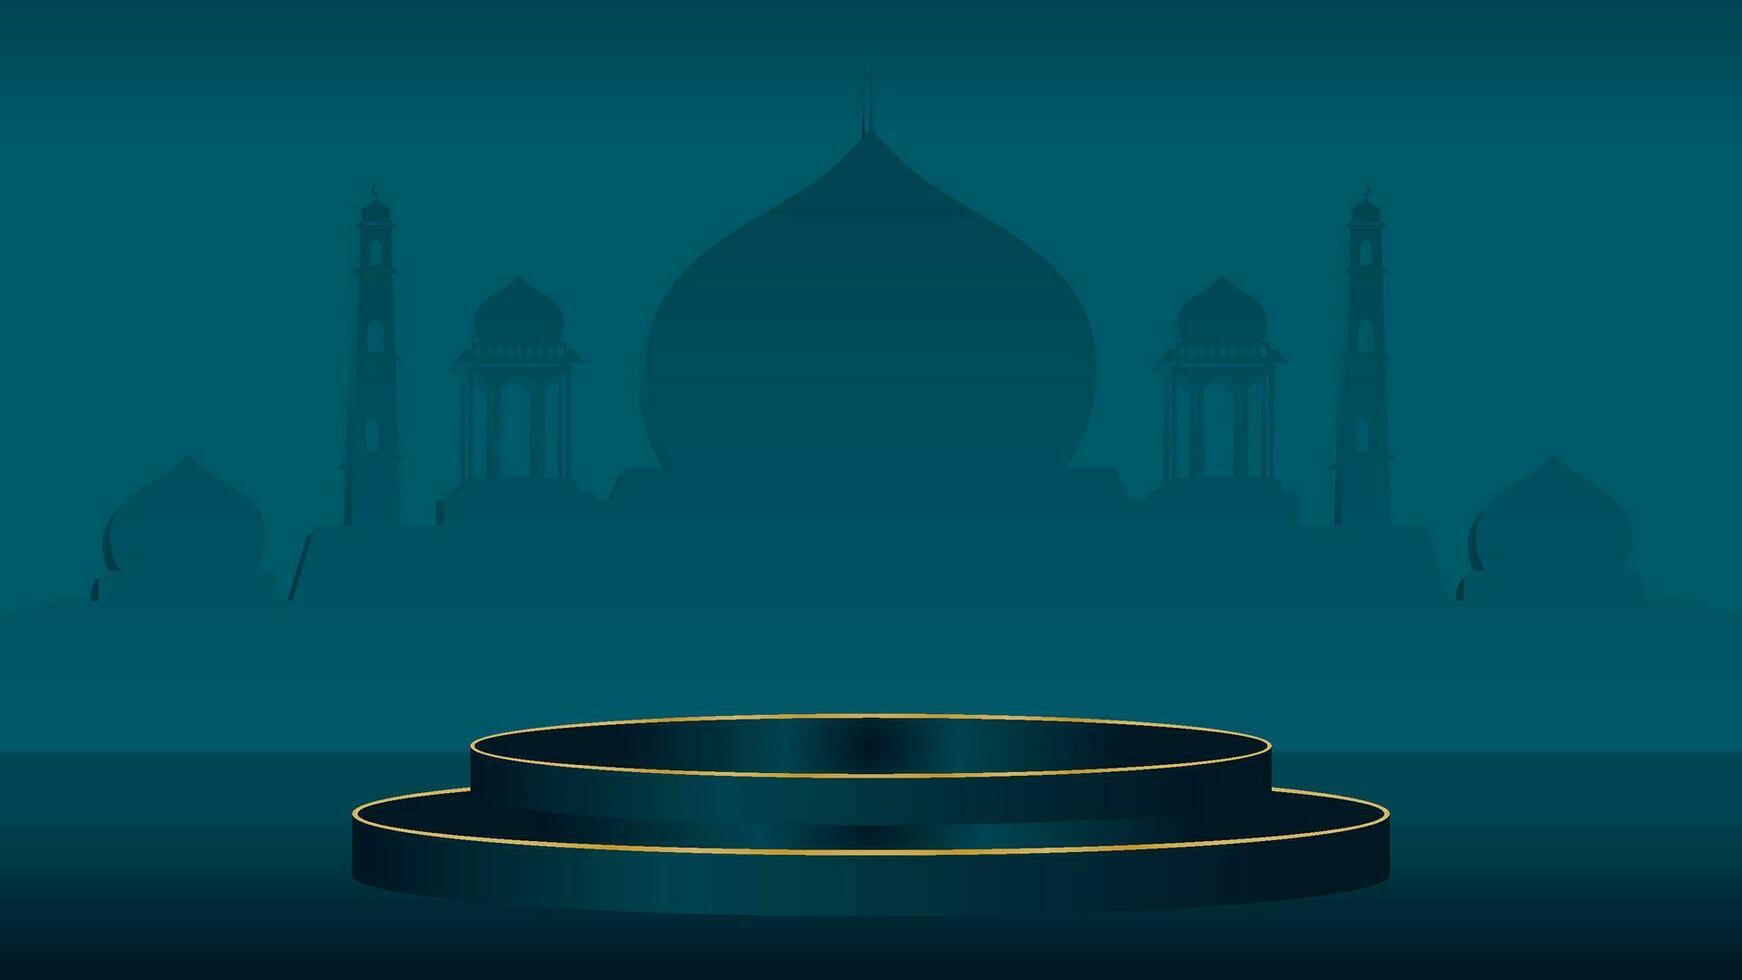 vert islamique podium afficher décoration Contexte avec arabe ornement réaliste vecteur illustration